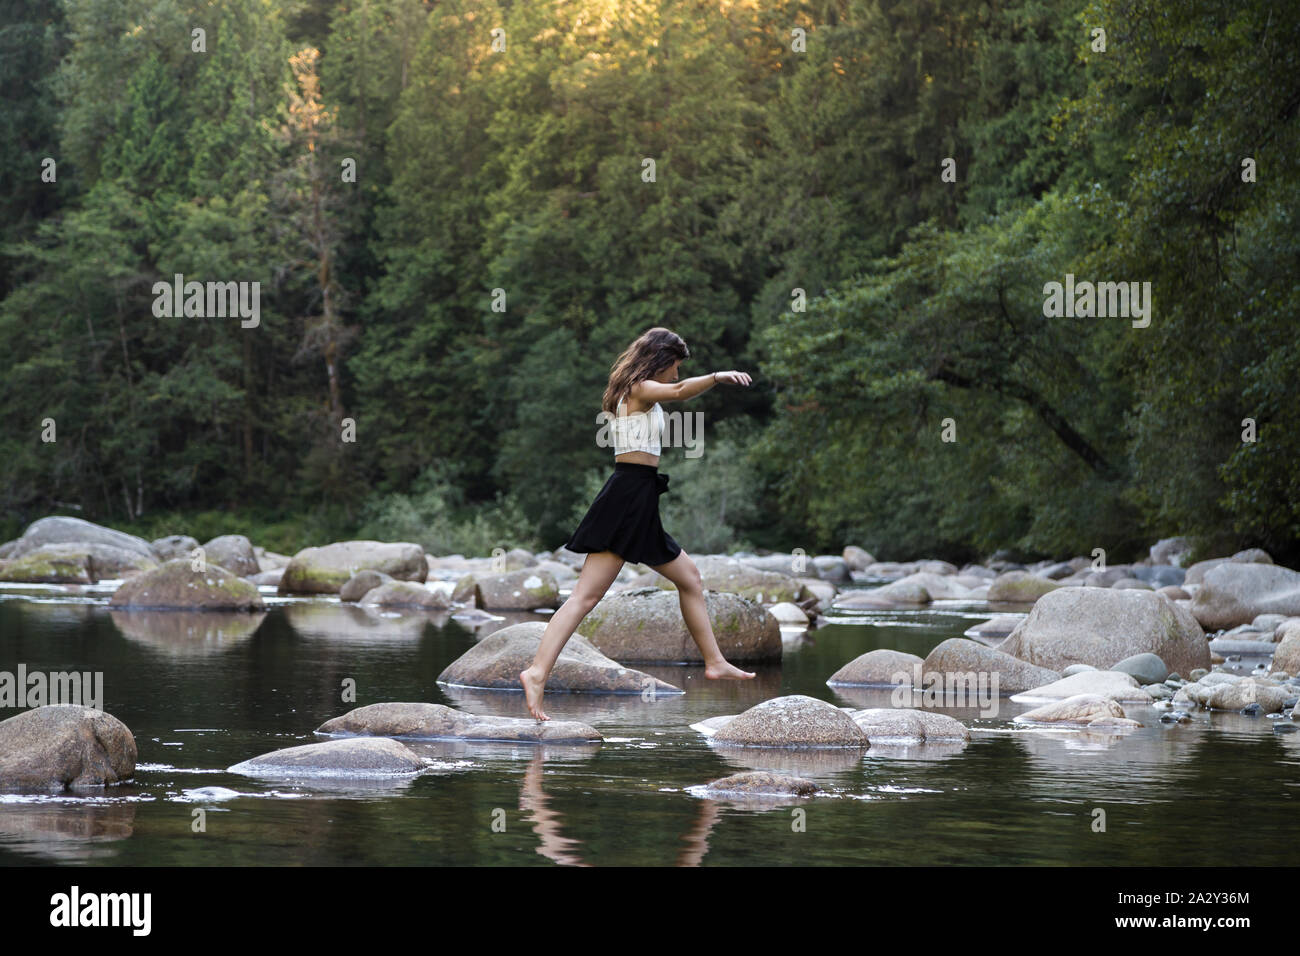 Jeune femme brune attrayante qui bondit sur des rochers au bord d'une rivière vierge dans une forêt à feuilles persistantes. Banque D'Images